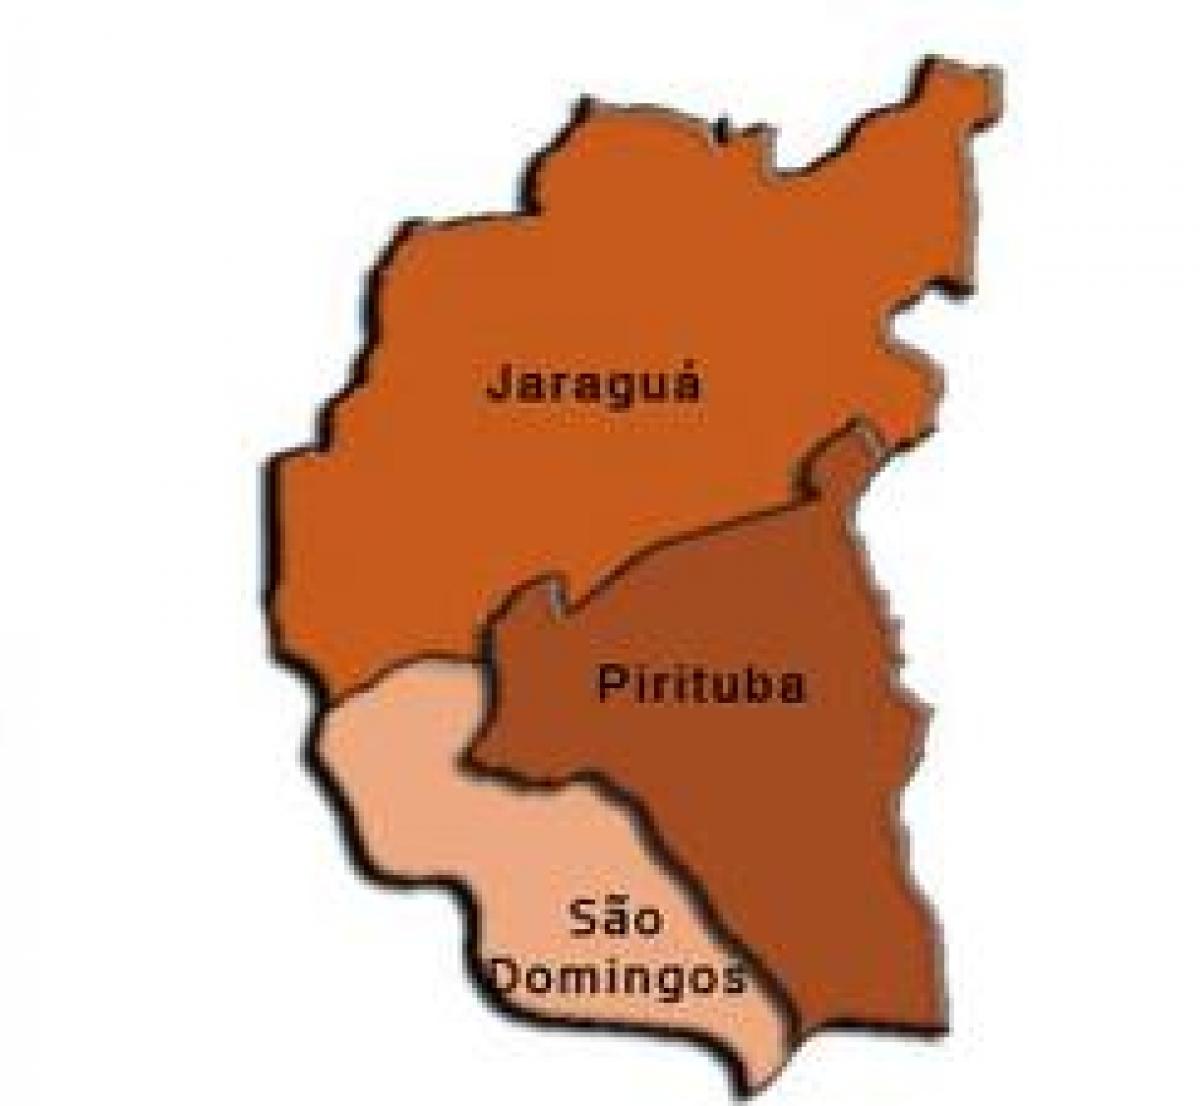 Mapa Pirituba-Jaraguá azpi-prefekturan